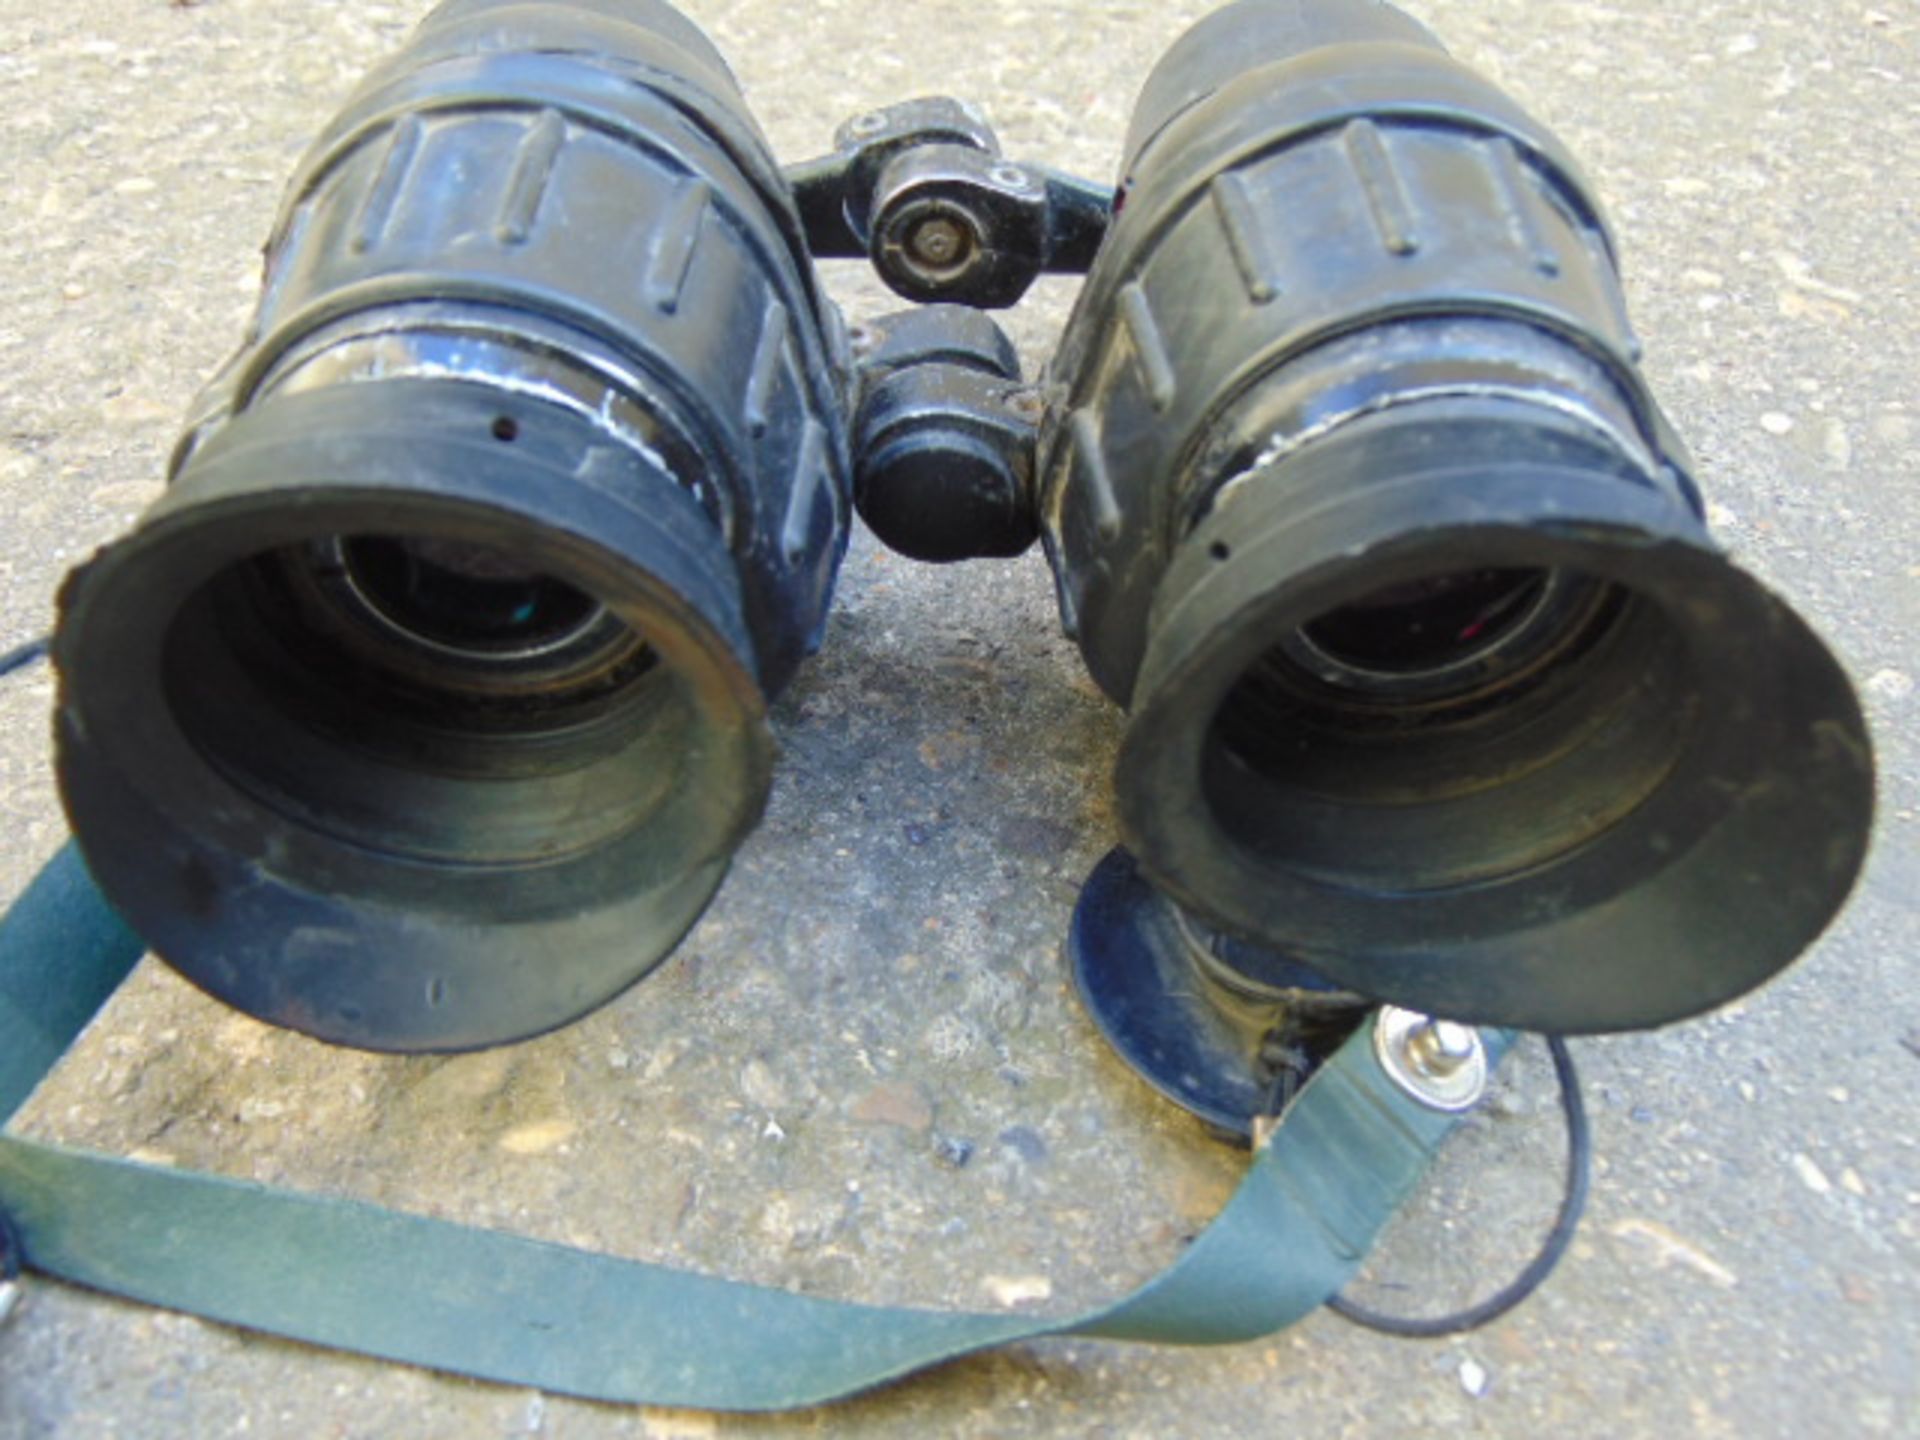 L12A1 Avimo Self Focusing Prism Binoculars - Image 5 of 7